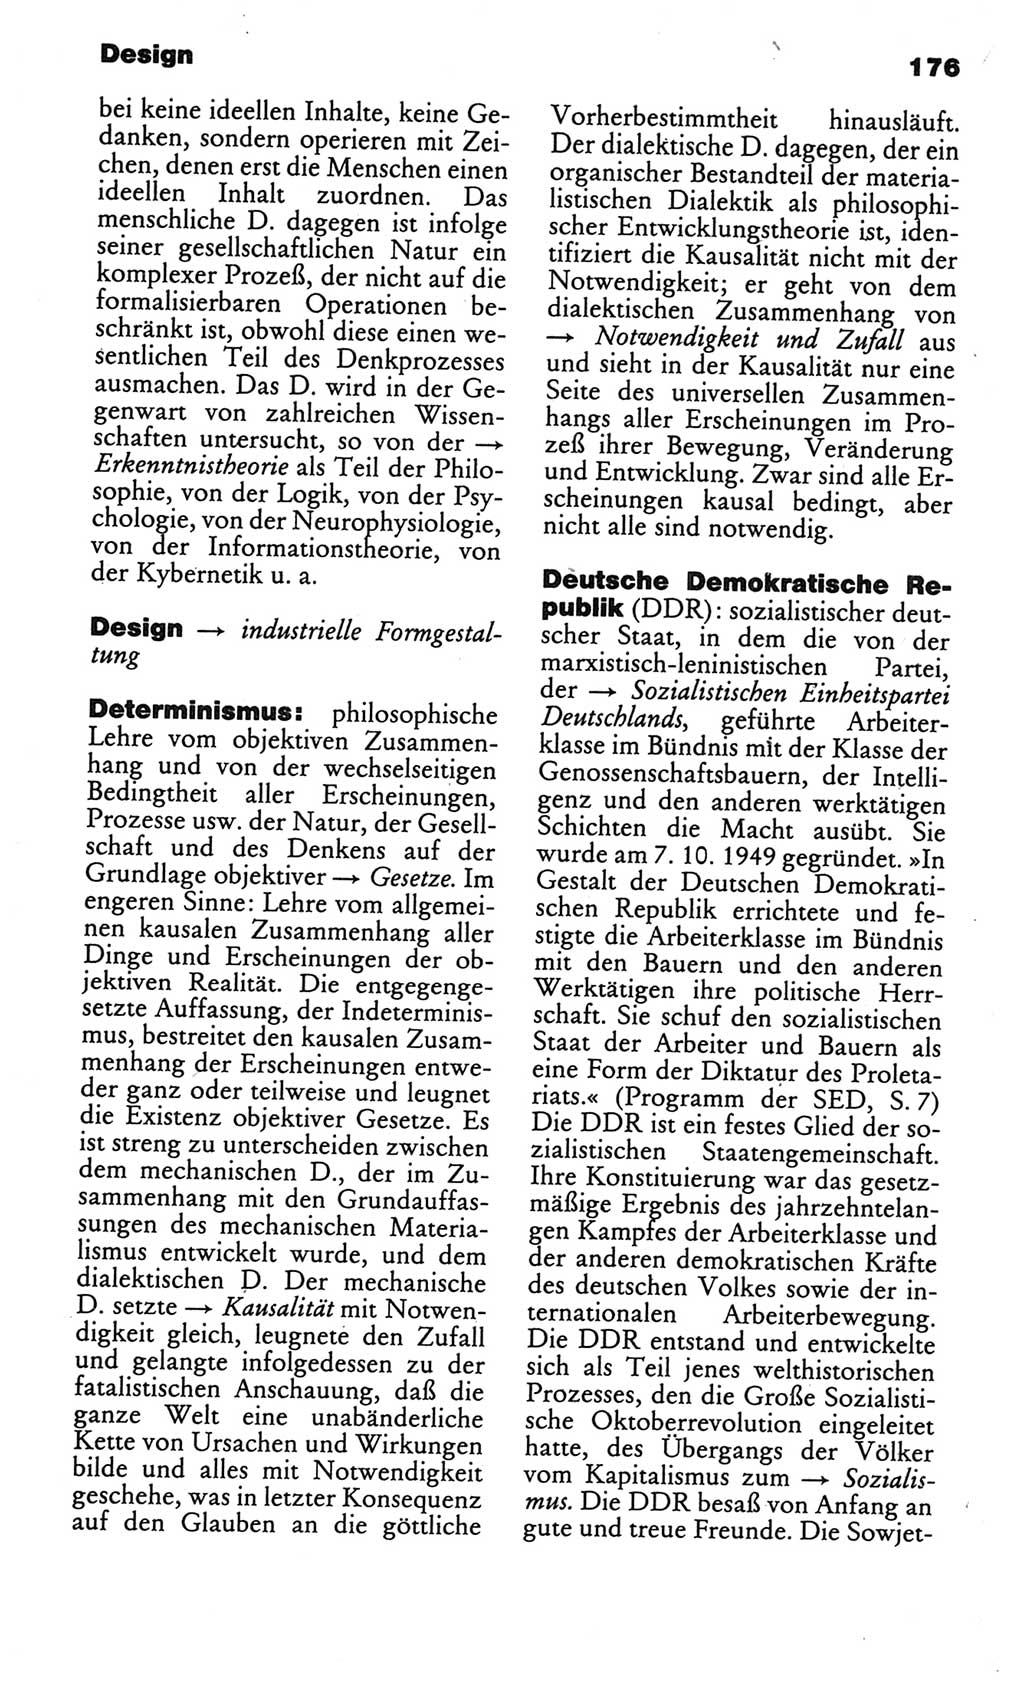 Kleines politisches Wörterbuch [Deutsche Demokratische Republik (DDR)] 1986, Seite 176 (Kl. pol. Wb. DDR 1986, S. 176)